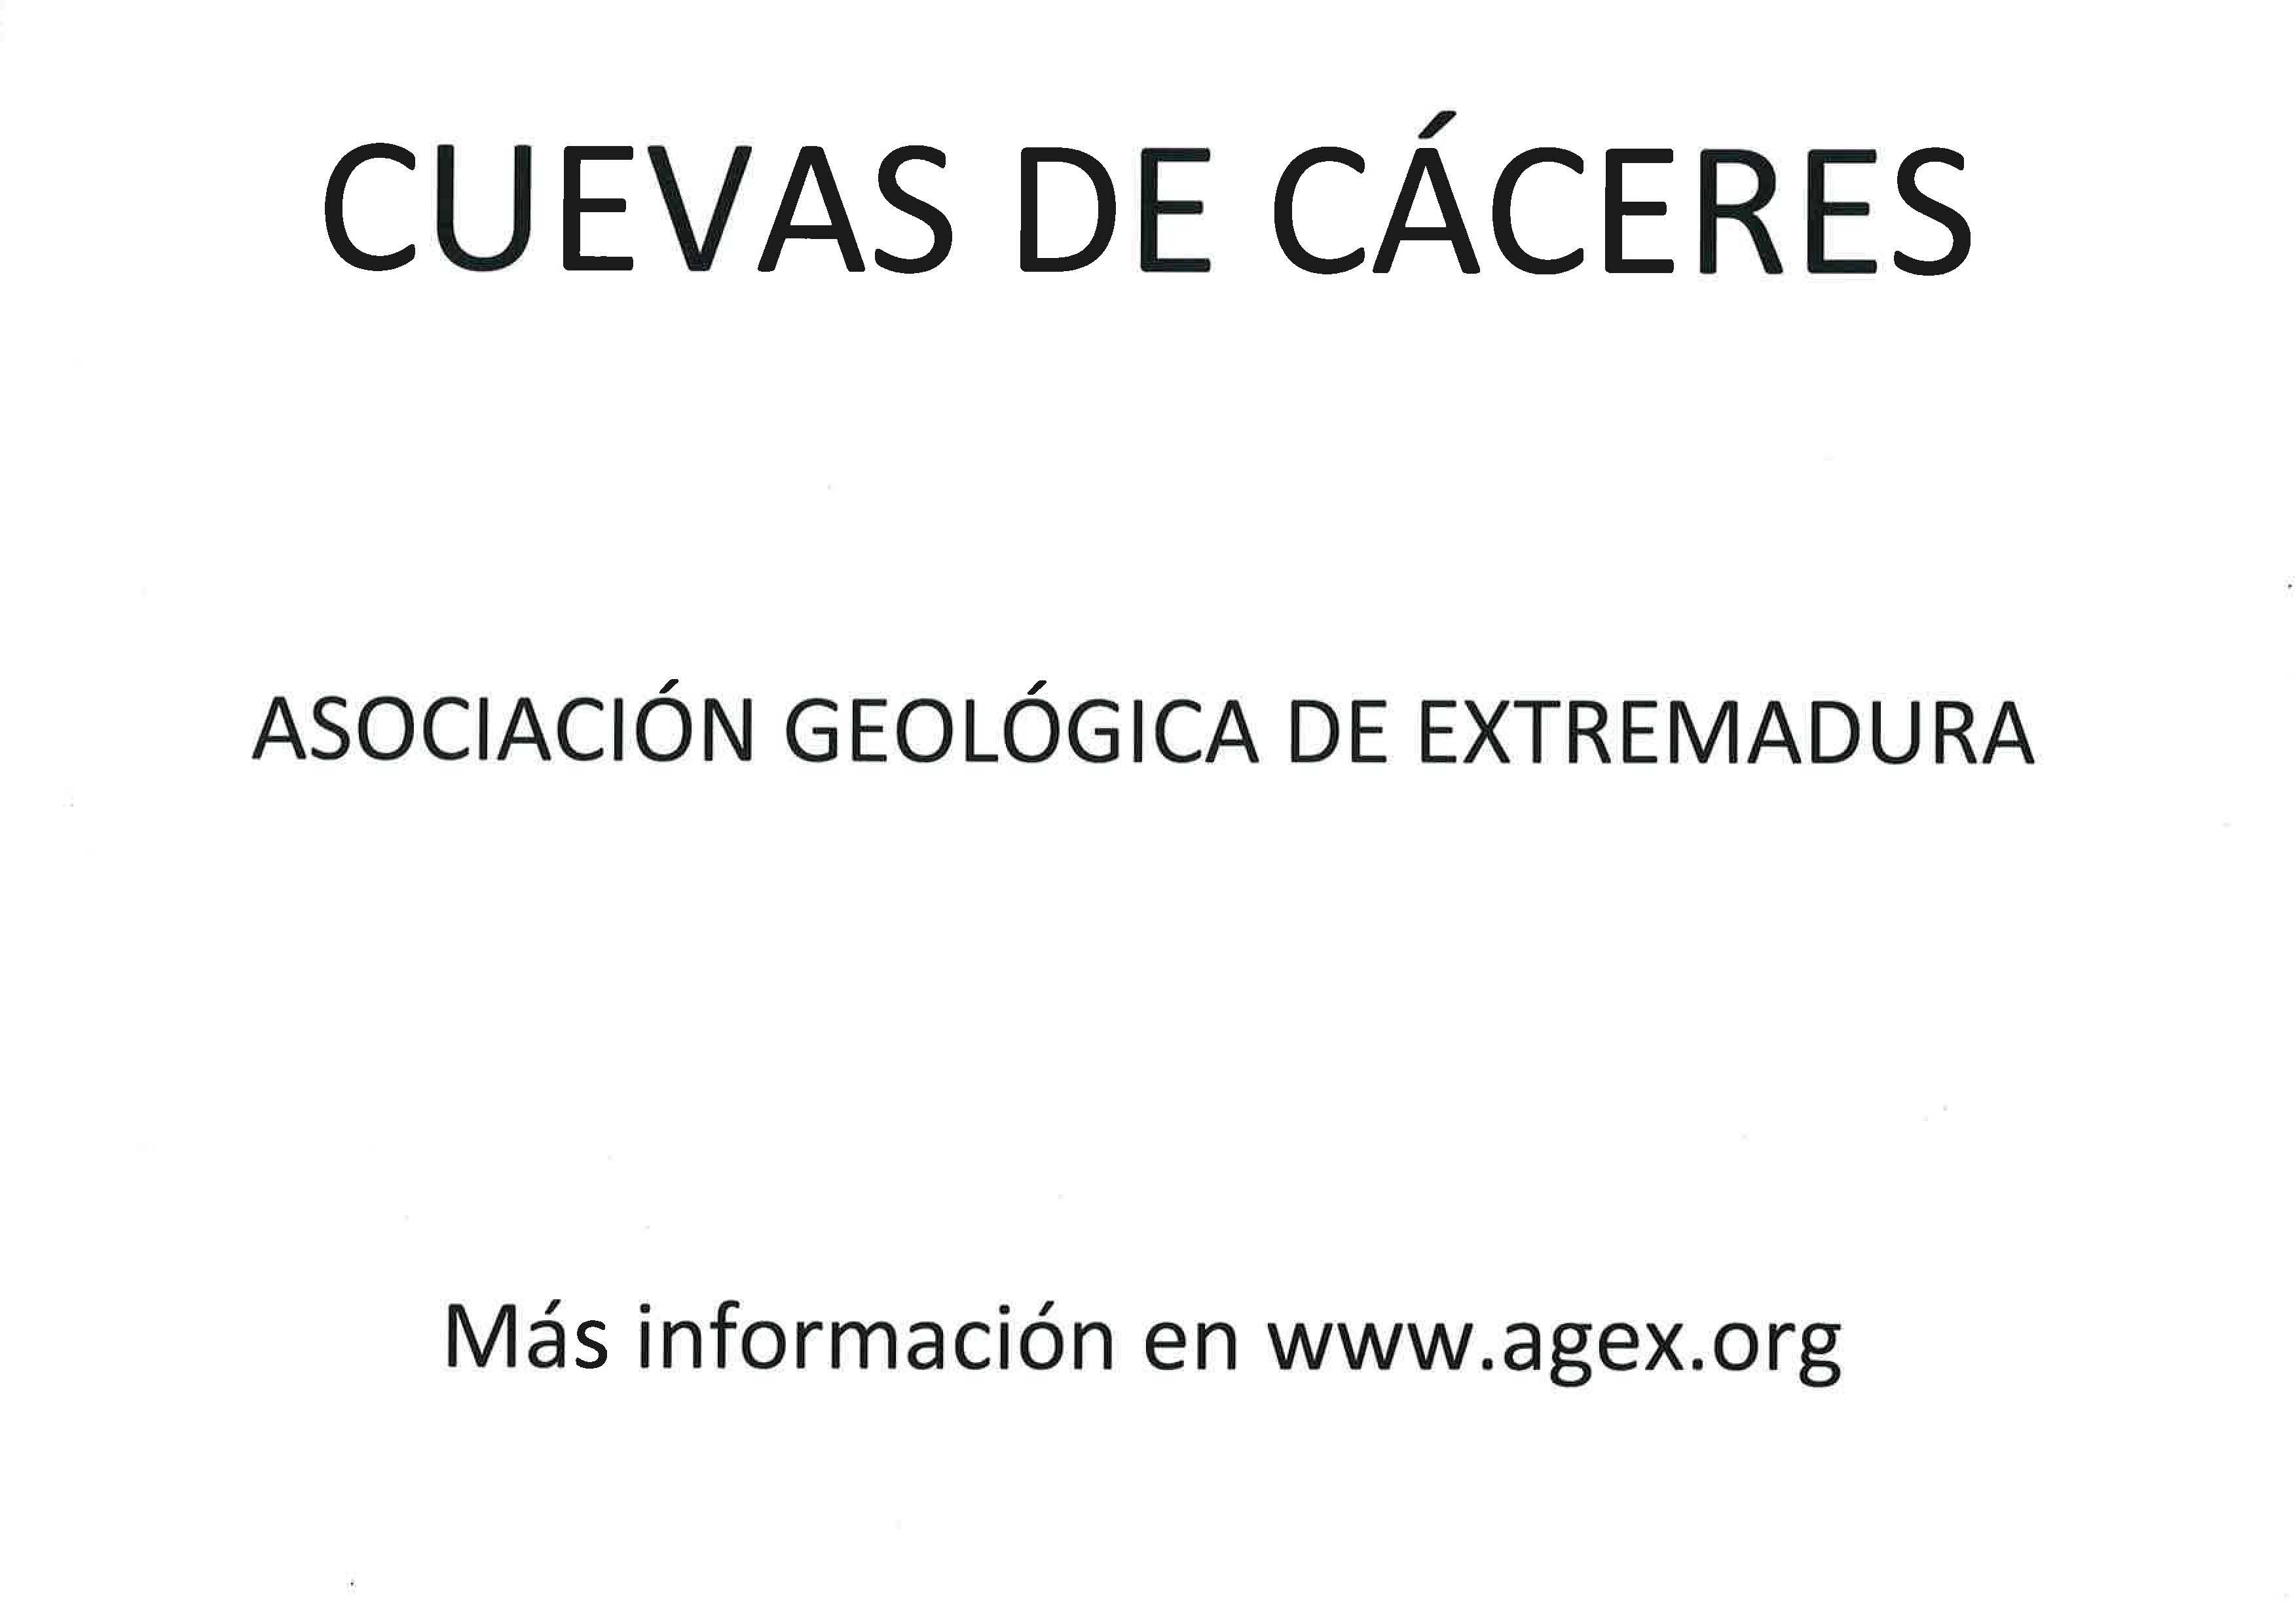 Exposición Cuevas de Cáceres